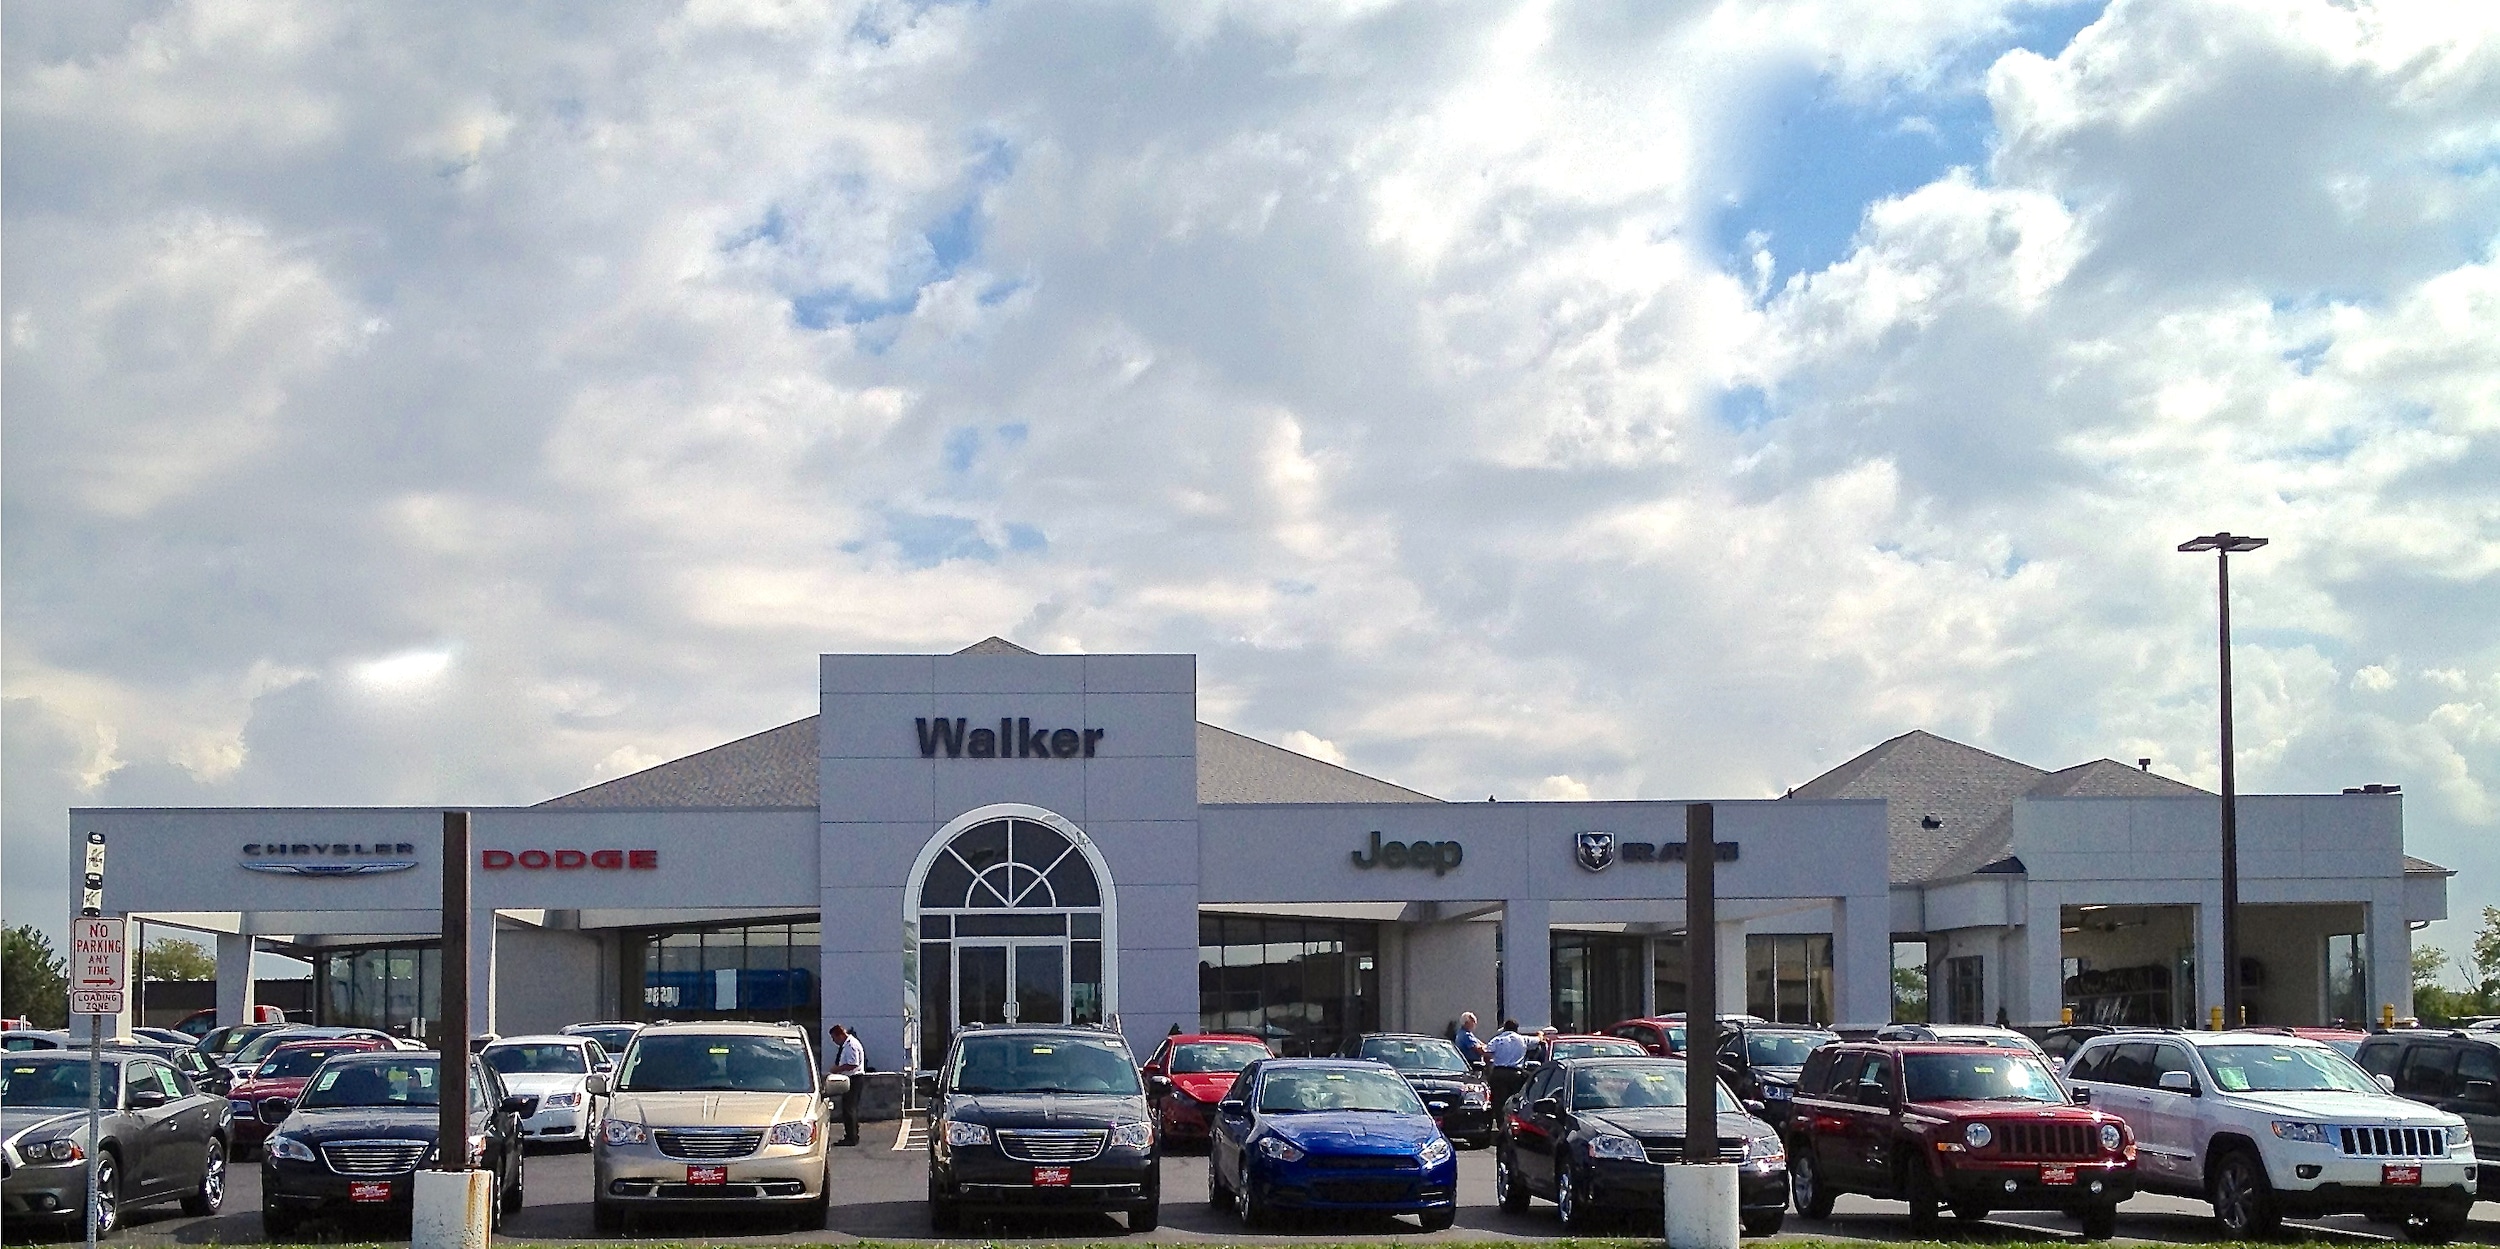 Walker chrysler jeep dodge dealership #4